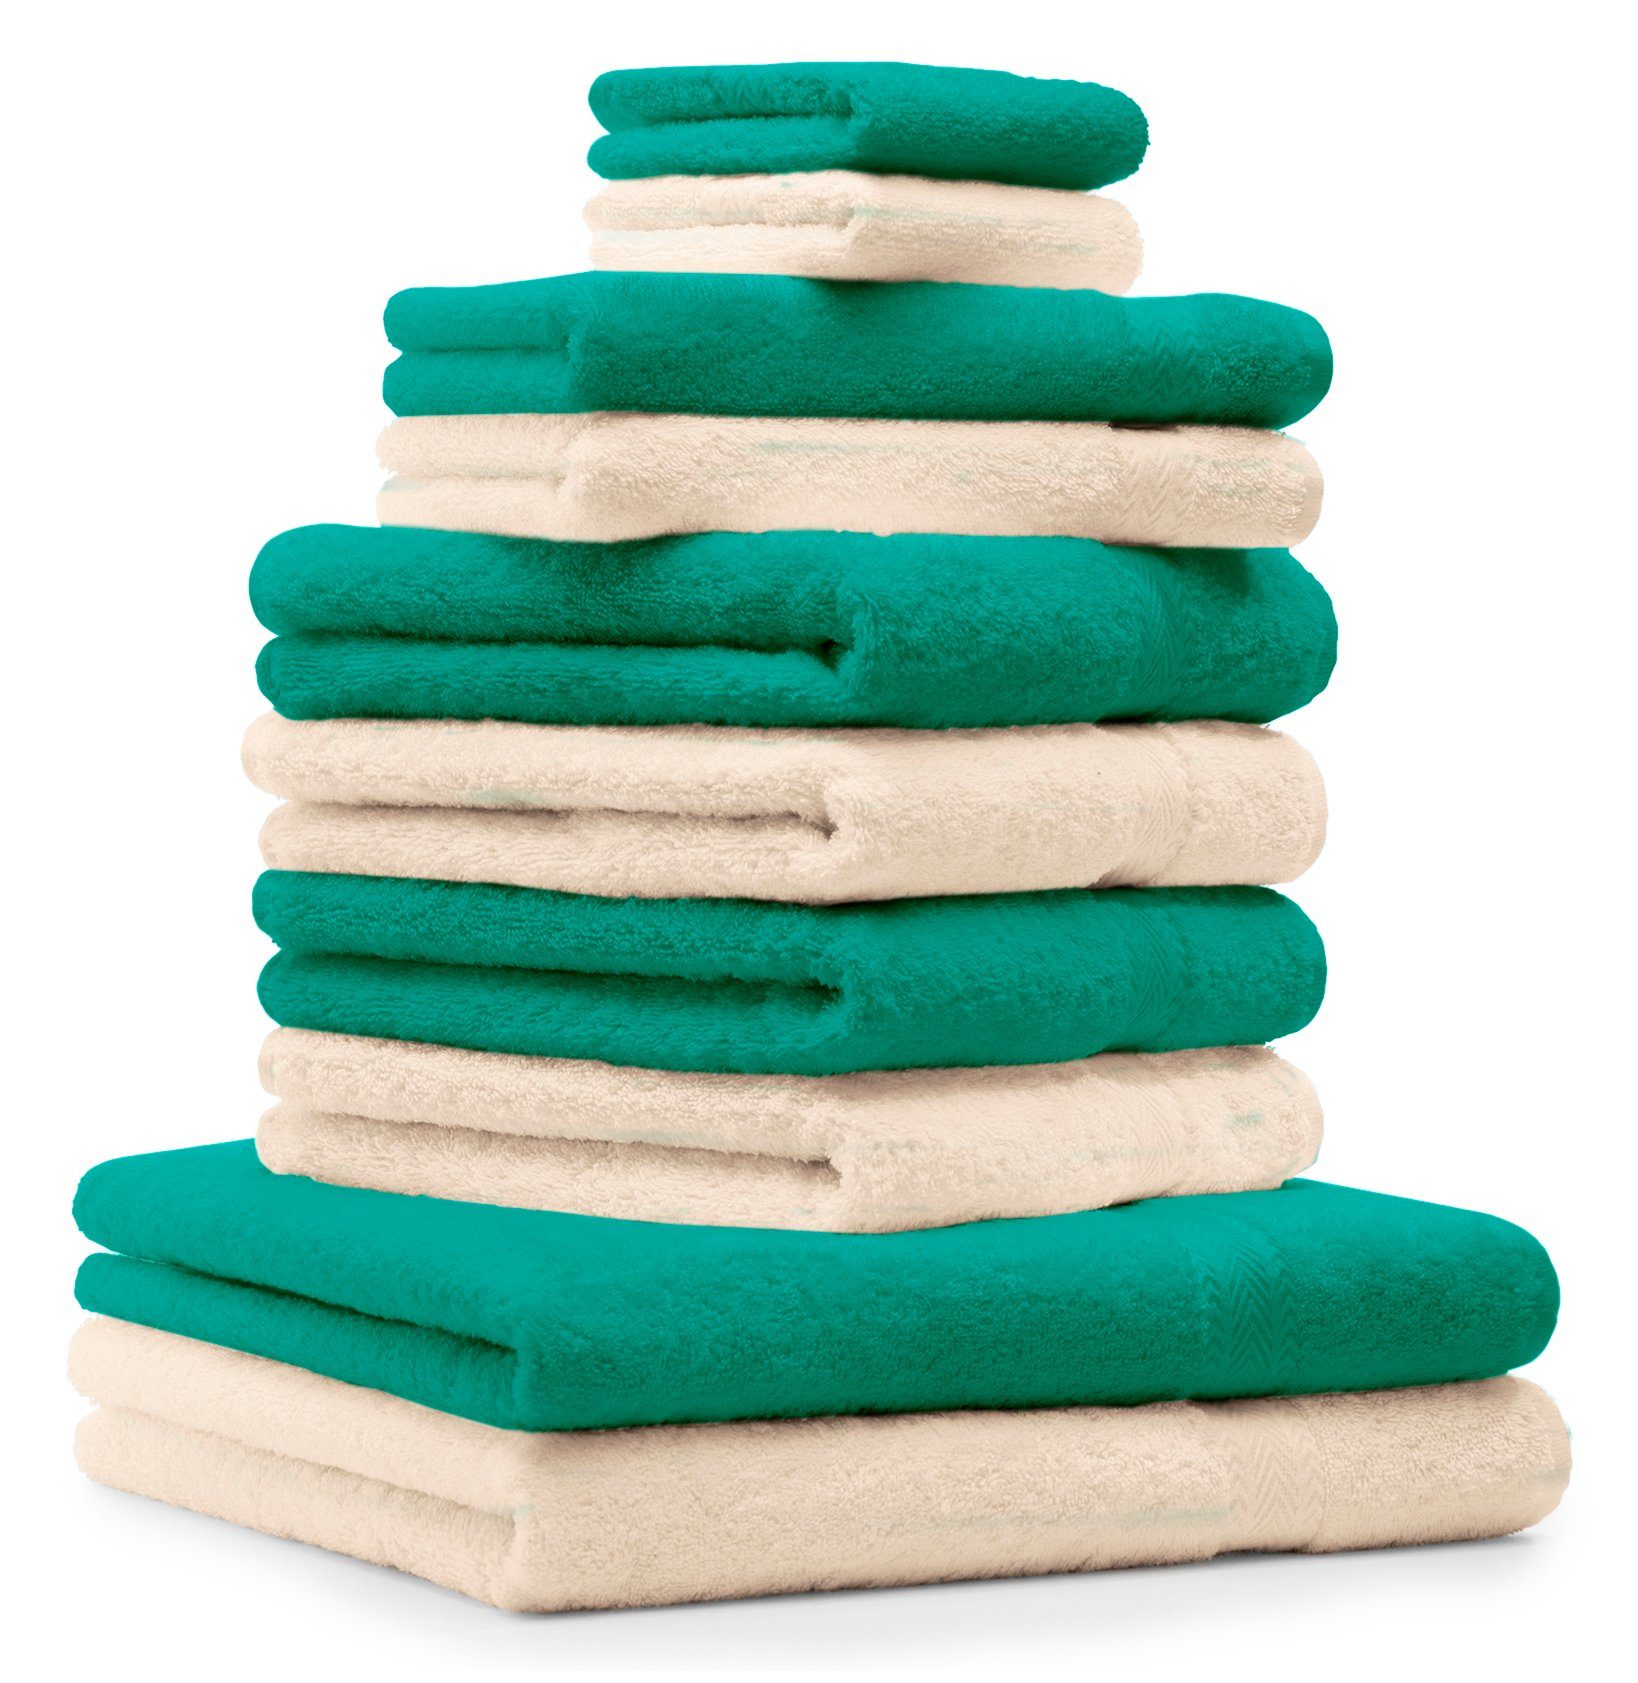 Betz Handtuch Set 10-TLG. Handtuch-Set Premium 100% Baumwolle 2 Duschtücher 4 Handtücher 2 Gästetücher 2 Waschhandschuhe Farbe Smaragd Grün & Beige, 100% Baumwolle | Handtuch-Sets